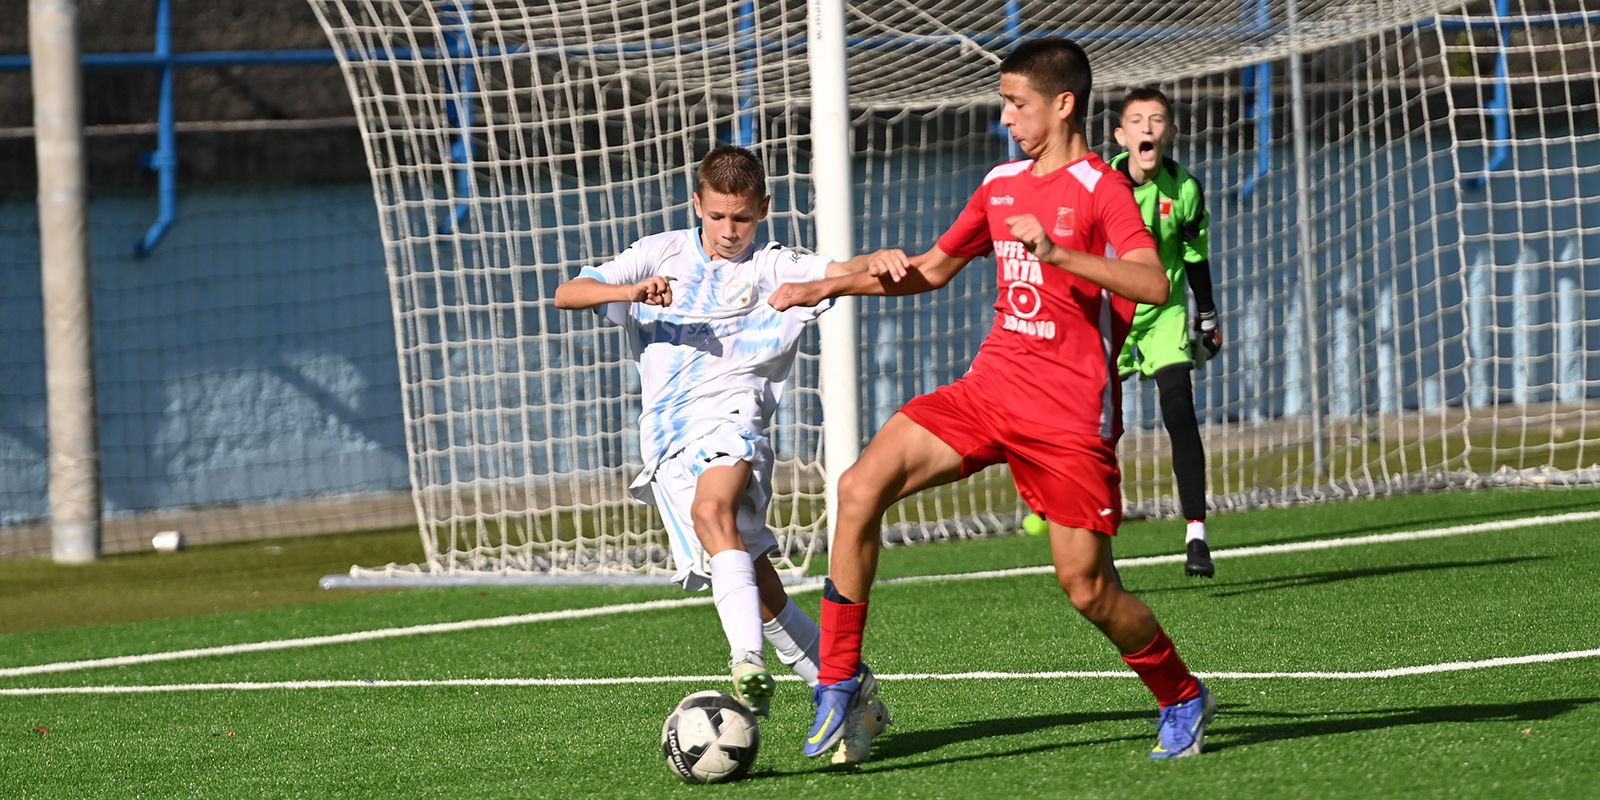 HNK Rijeka 38. klub na svijetu po IFFHS-u - MojaRijeka